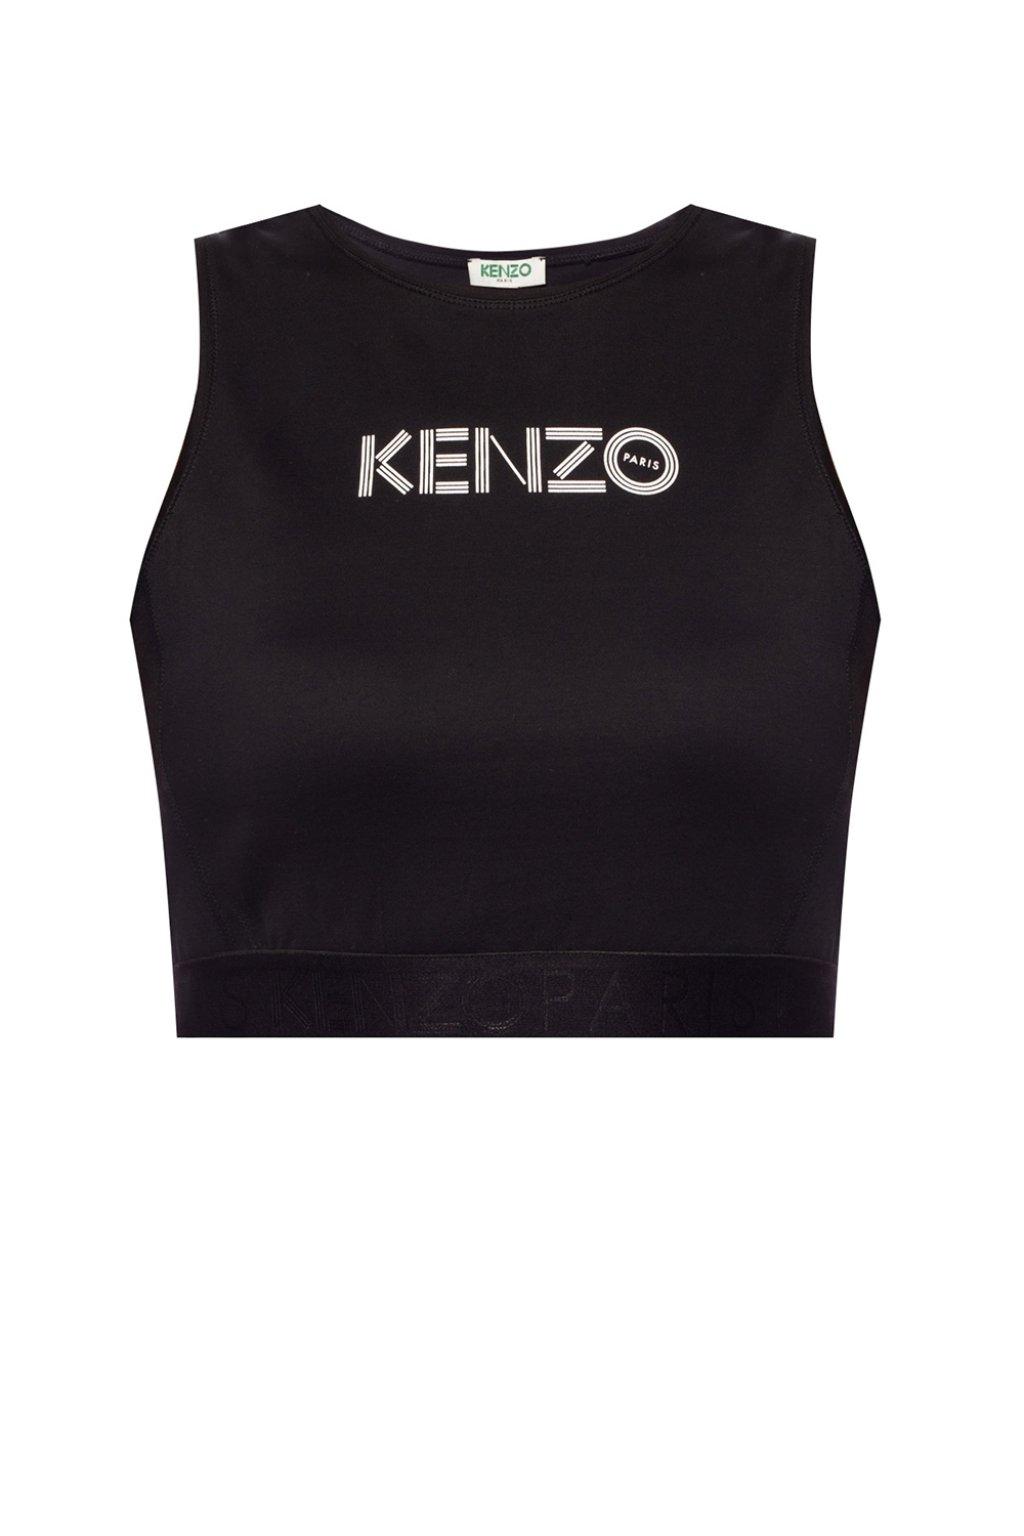 kenzo tank top